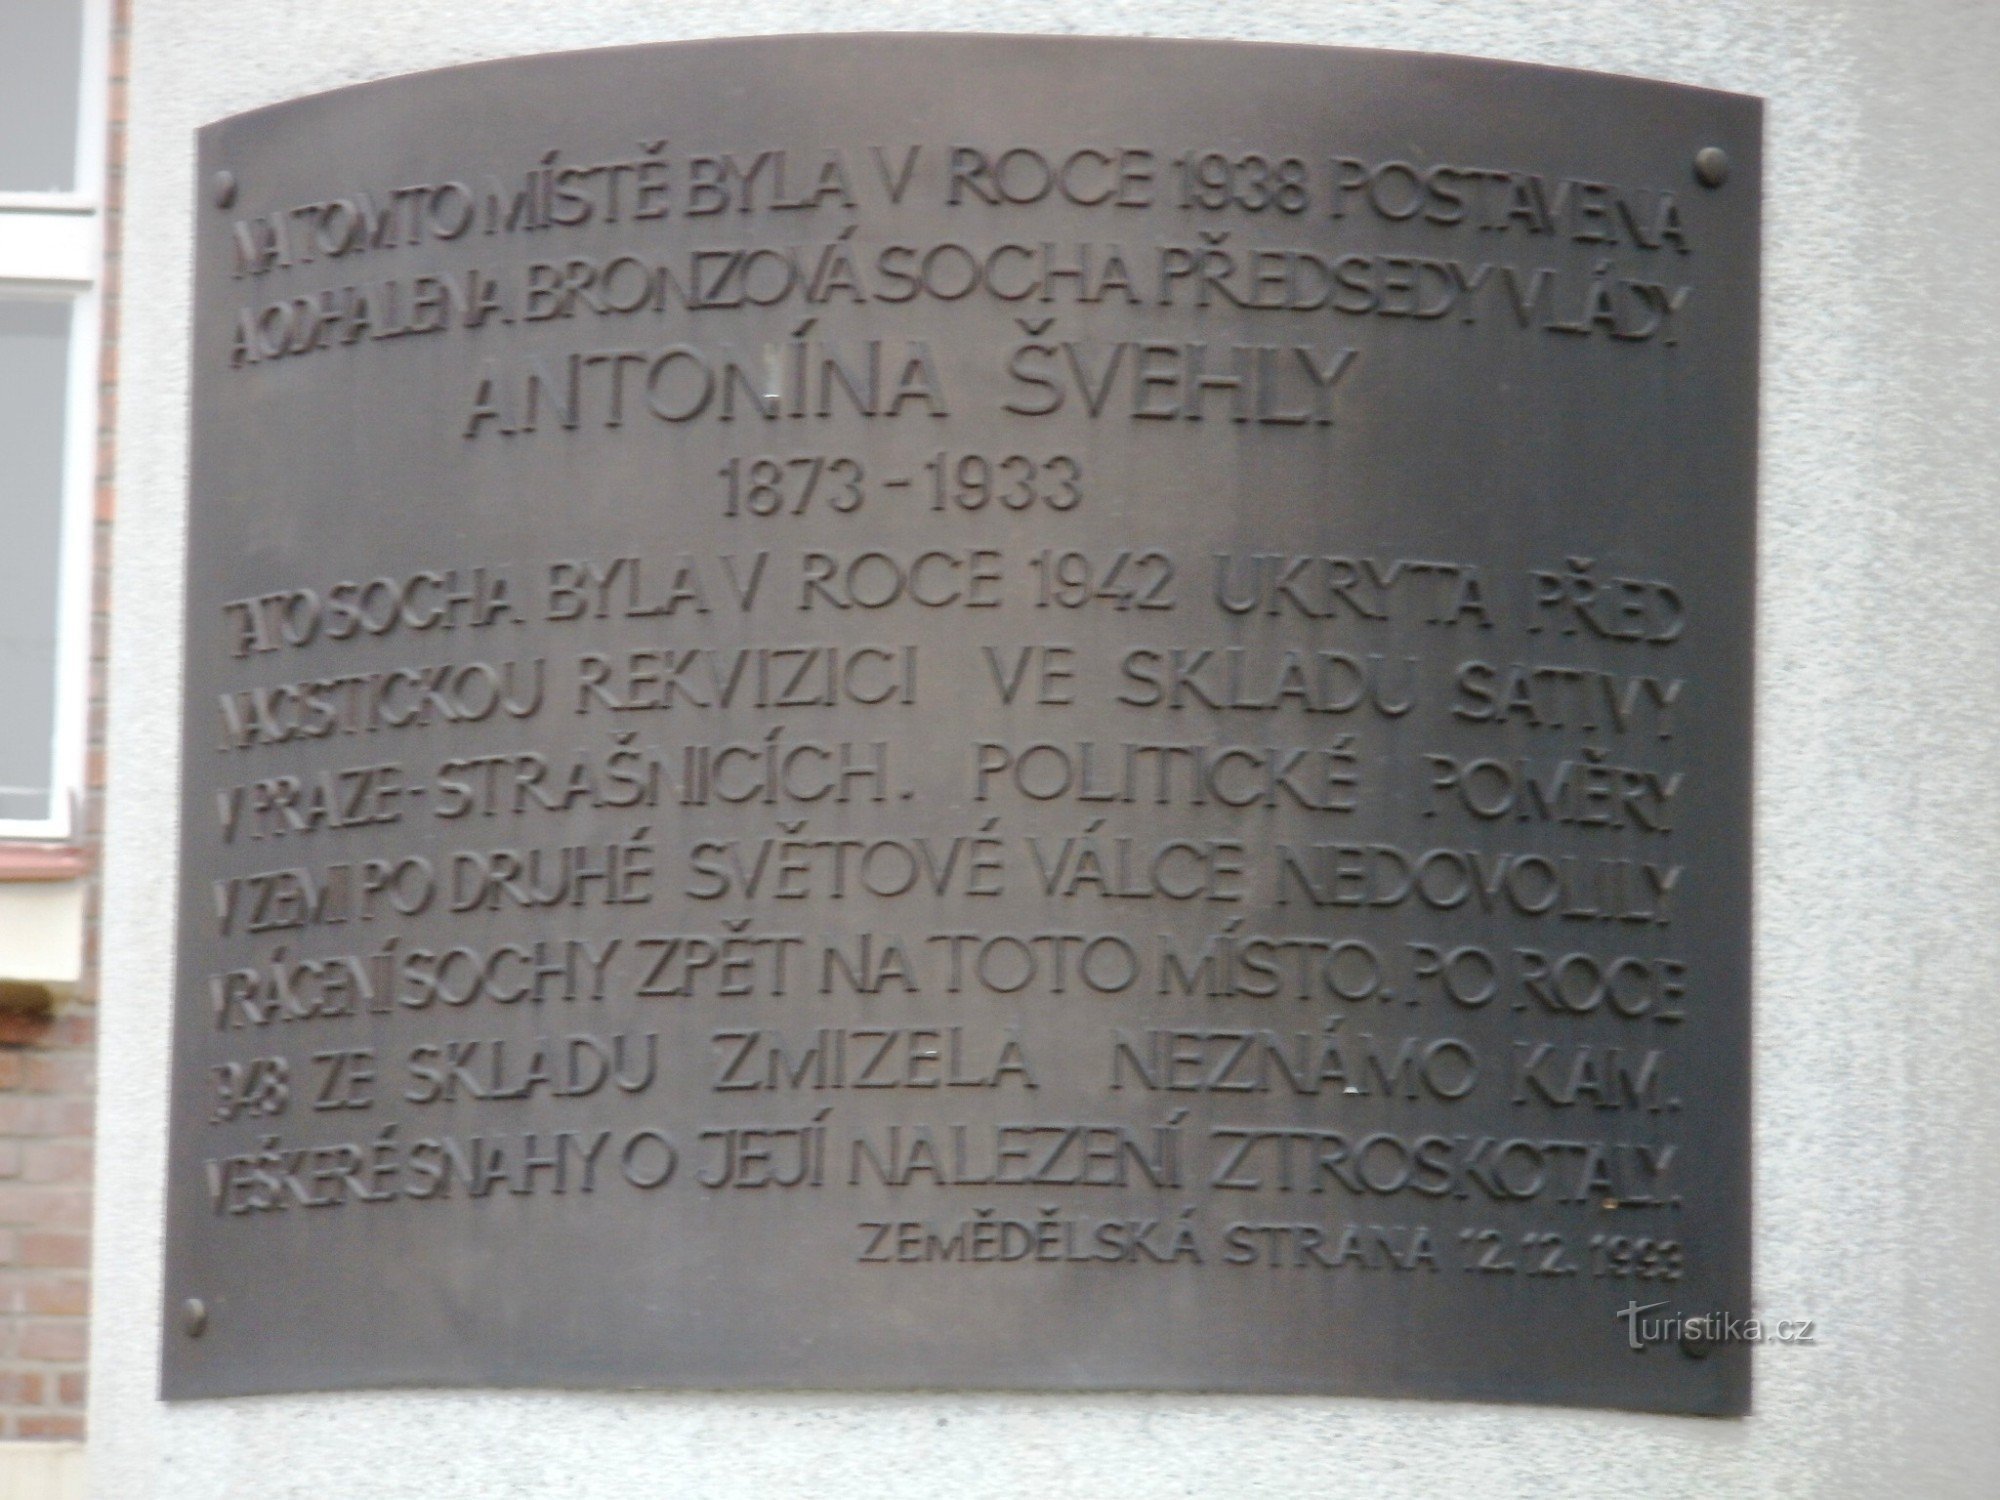 Havlíčkův Brod - monumento a Antonín Švehla